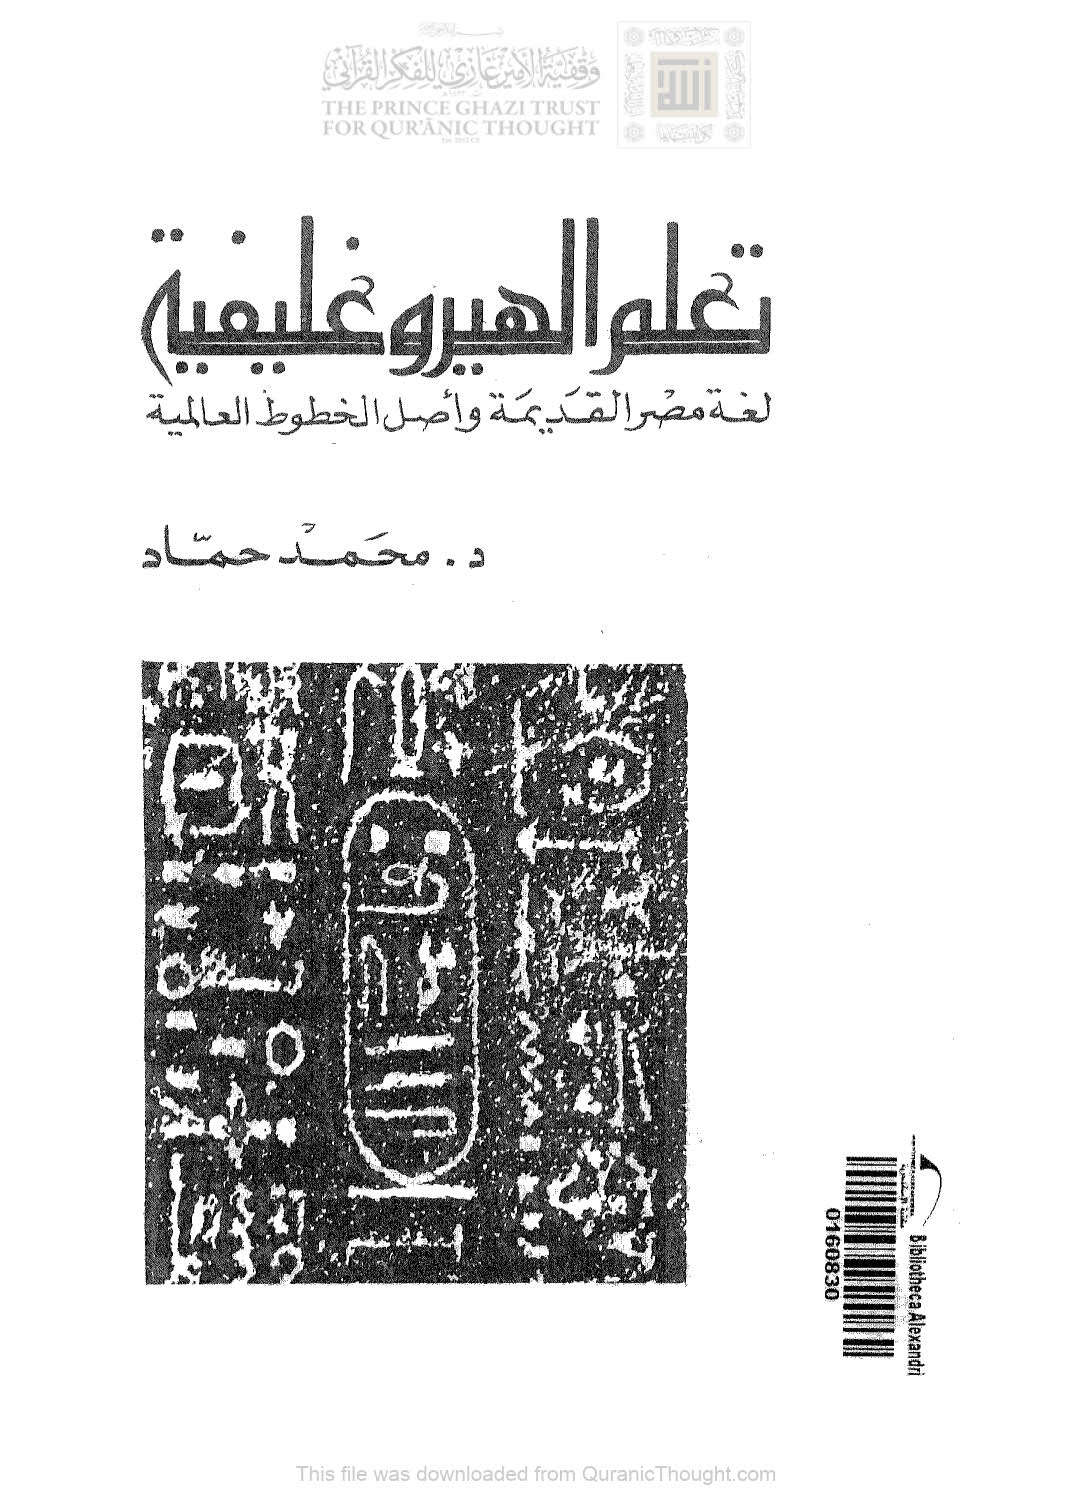 تعلم الهيروغليفية لغة مصر القديمة وأصل الخطوط العالمية